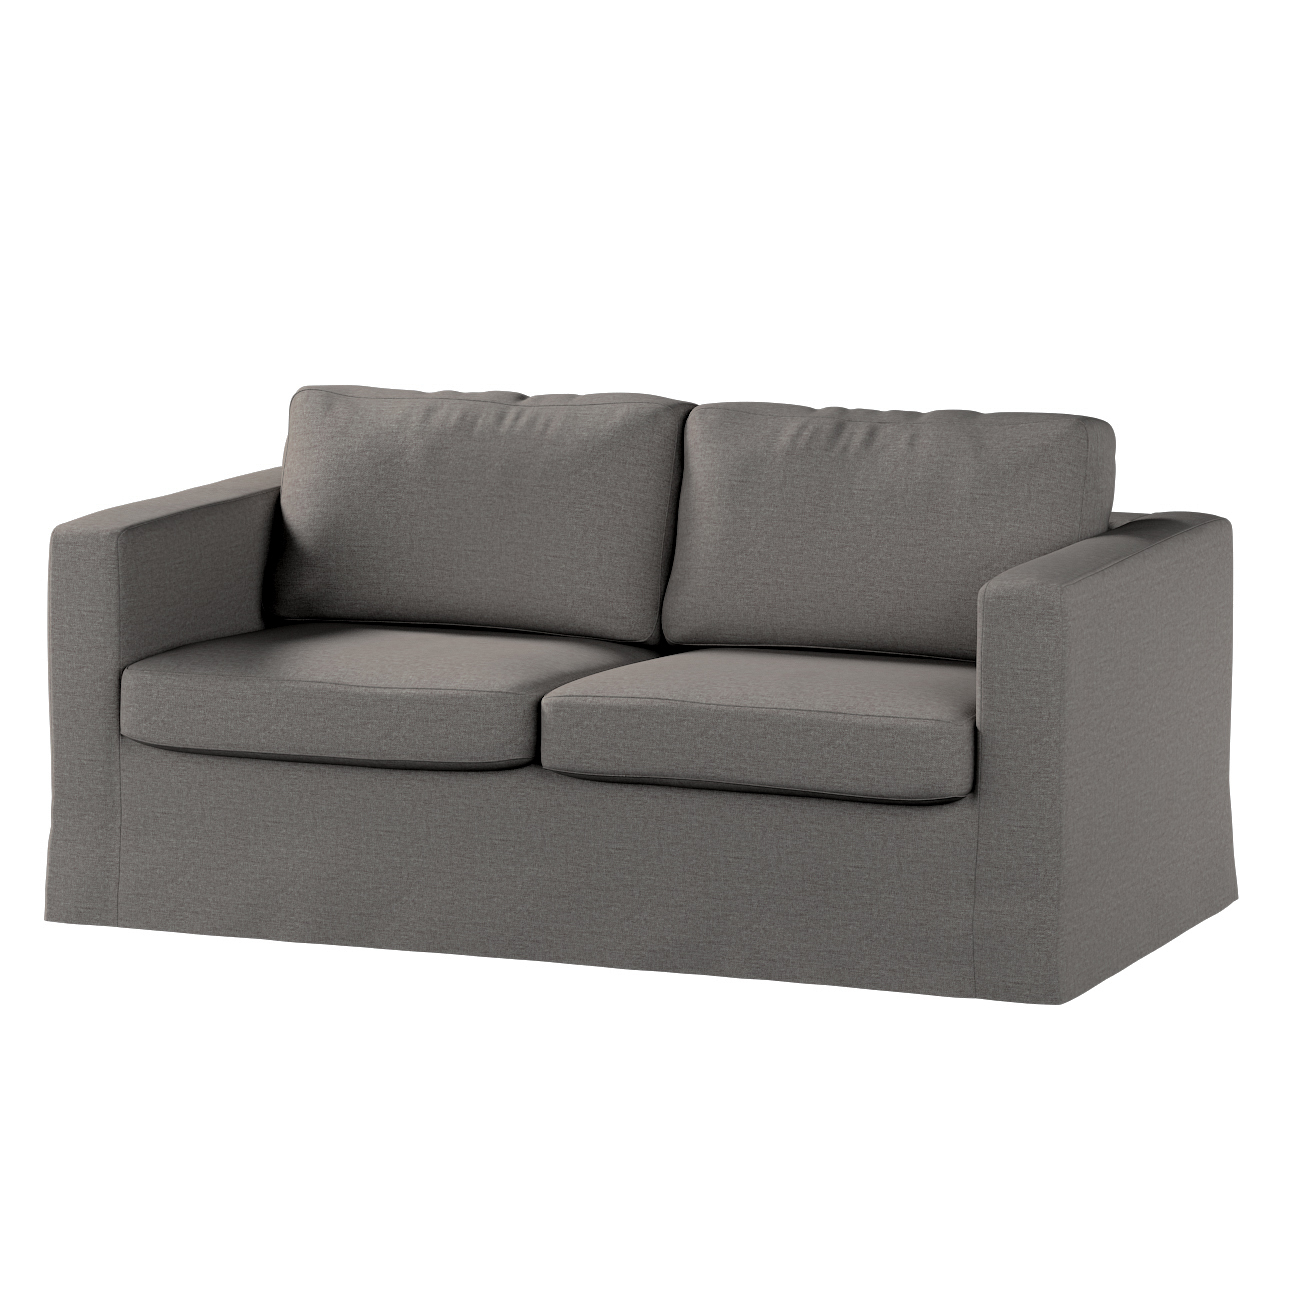 Bezug für Karlstad 2-Sitzer Sofa nicht ausklappbar, lang, dunkelgrau, Sofah günstig online kaufen